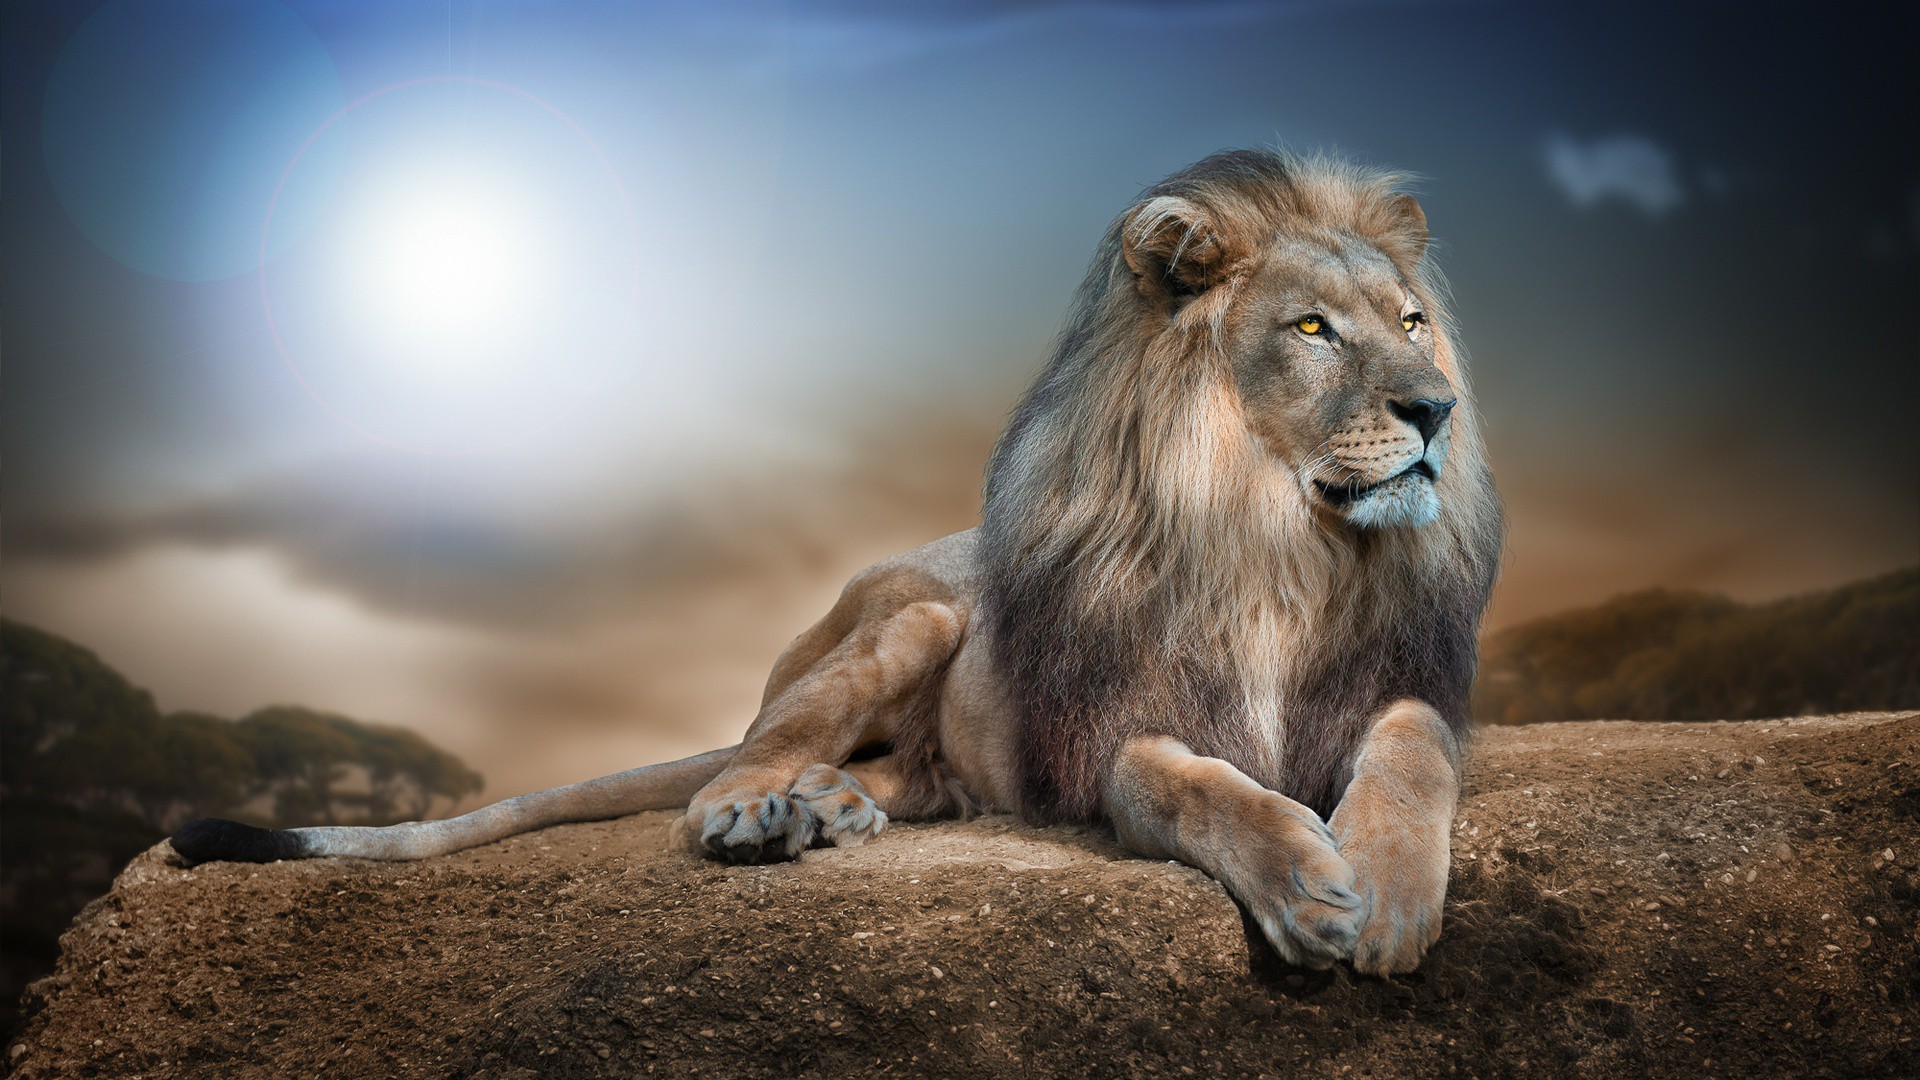 Wild Animal Lion HD Wallpaper View HD